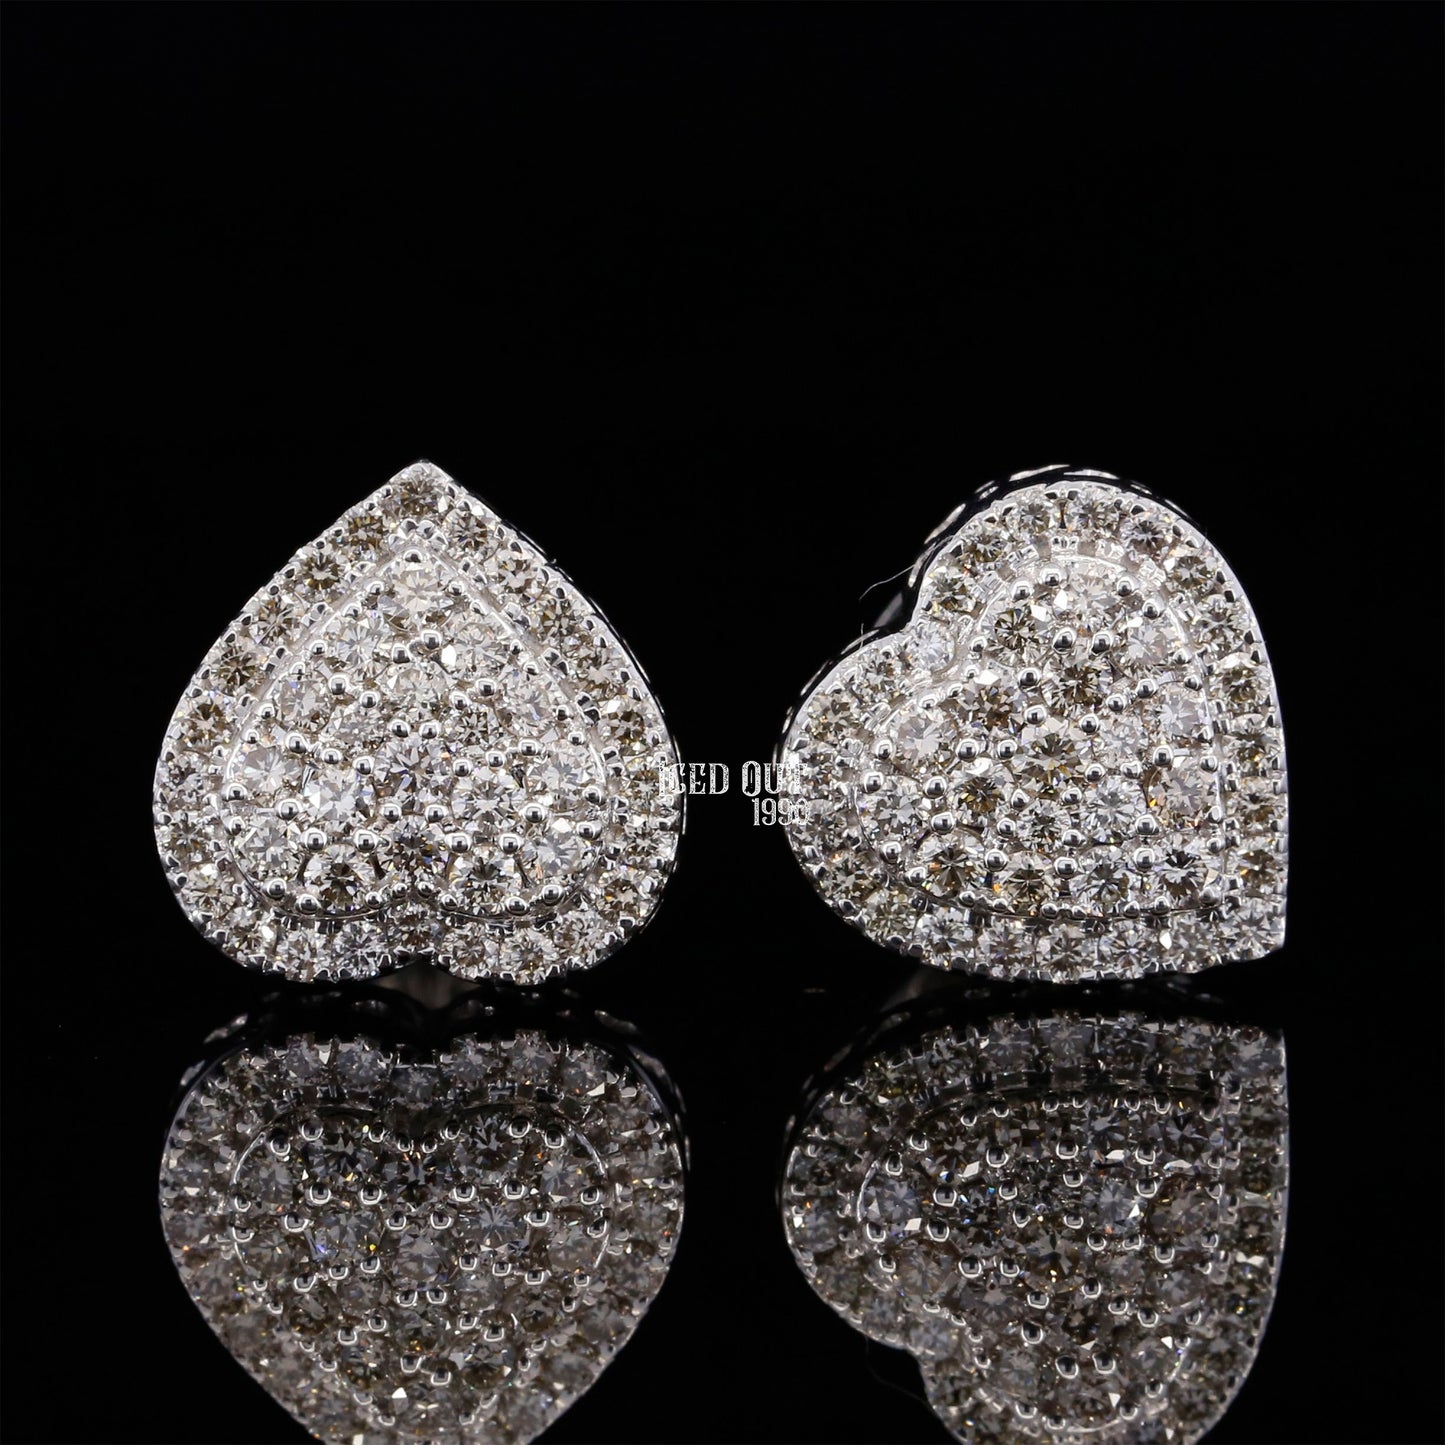 1 Carat Moissanite Heart Design Earrings